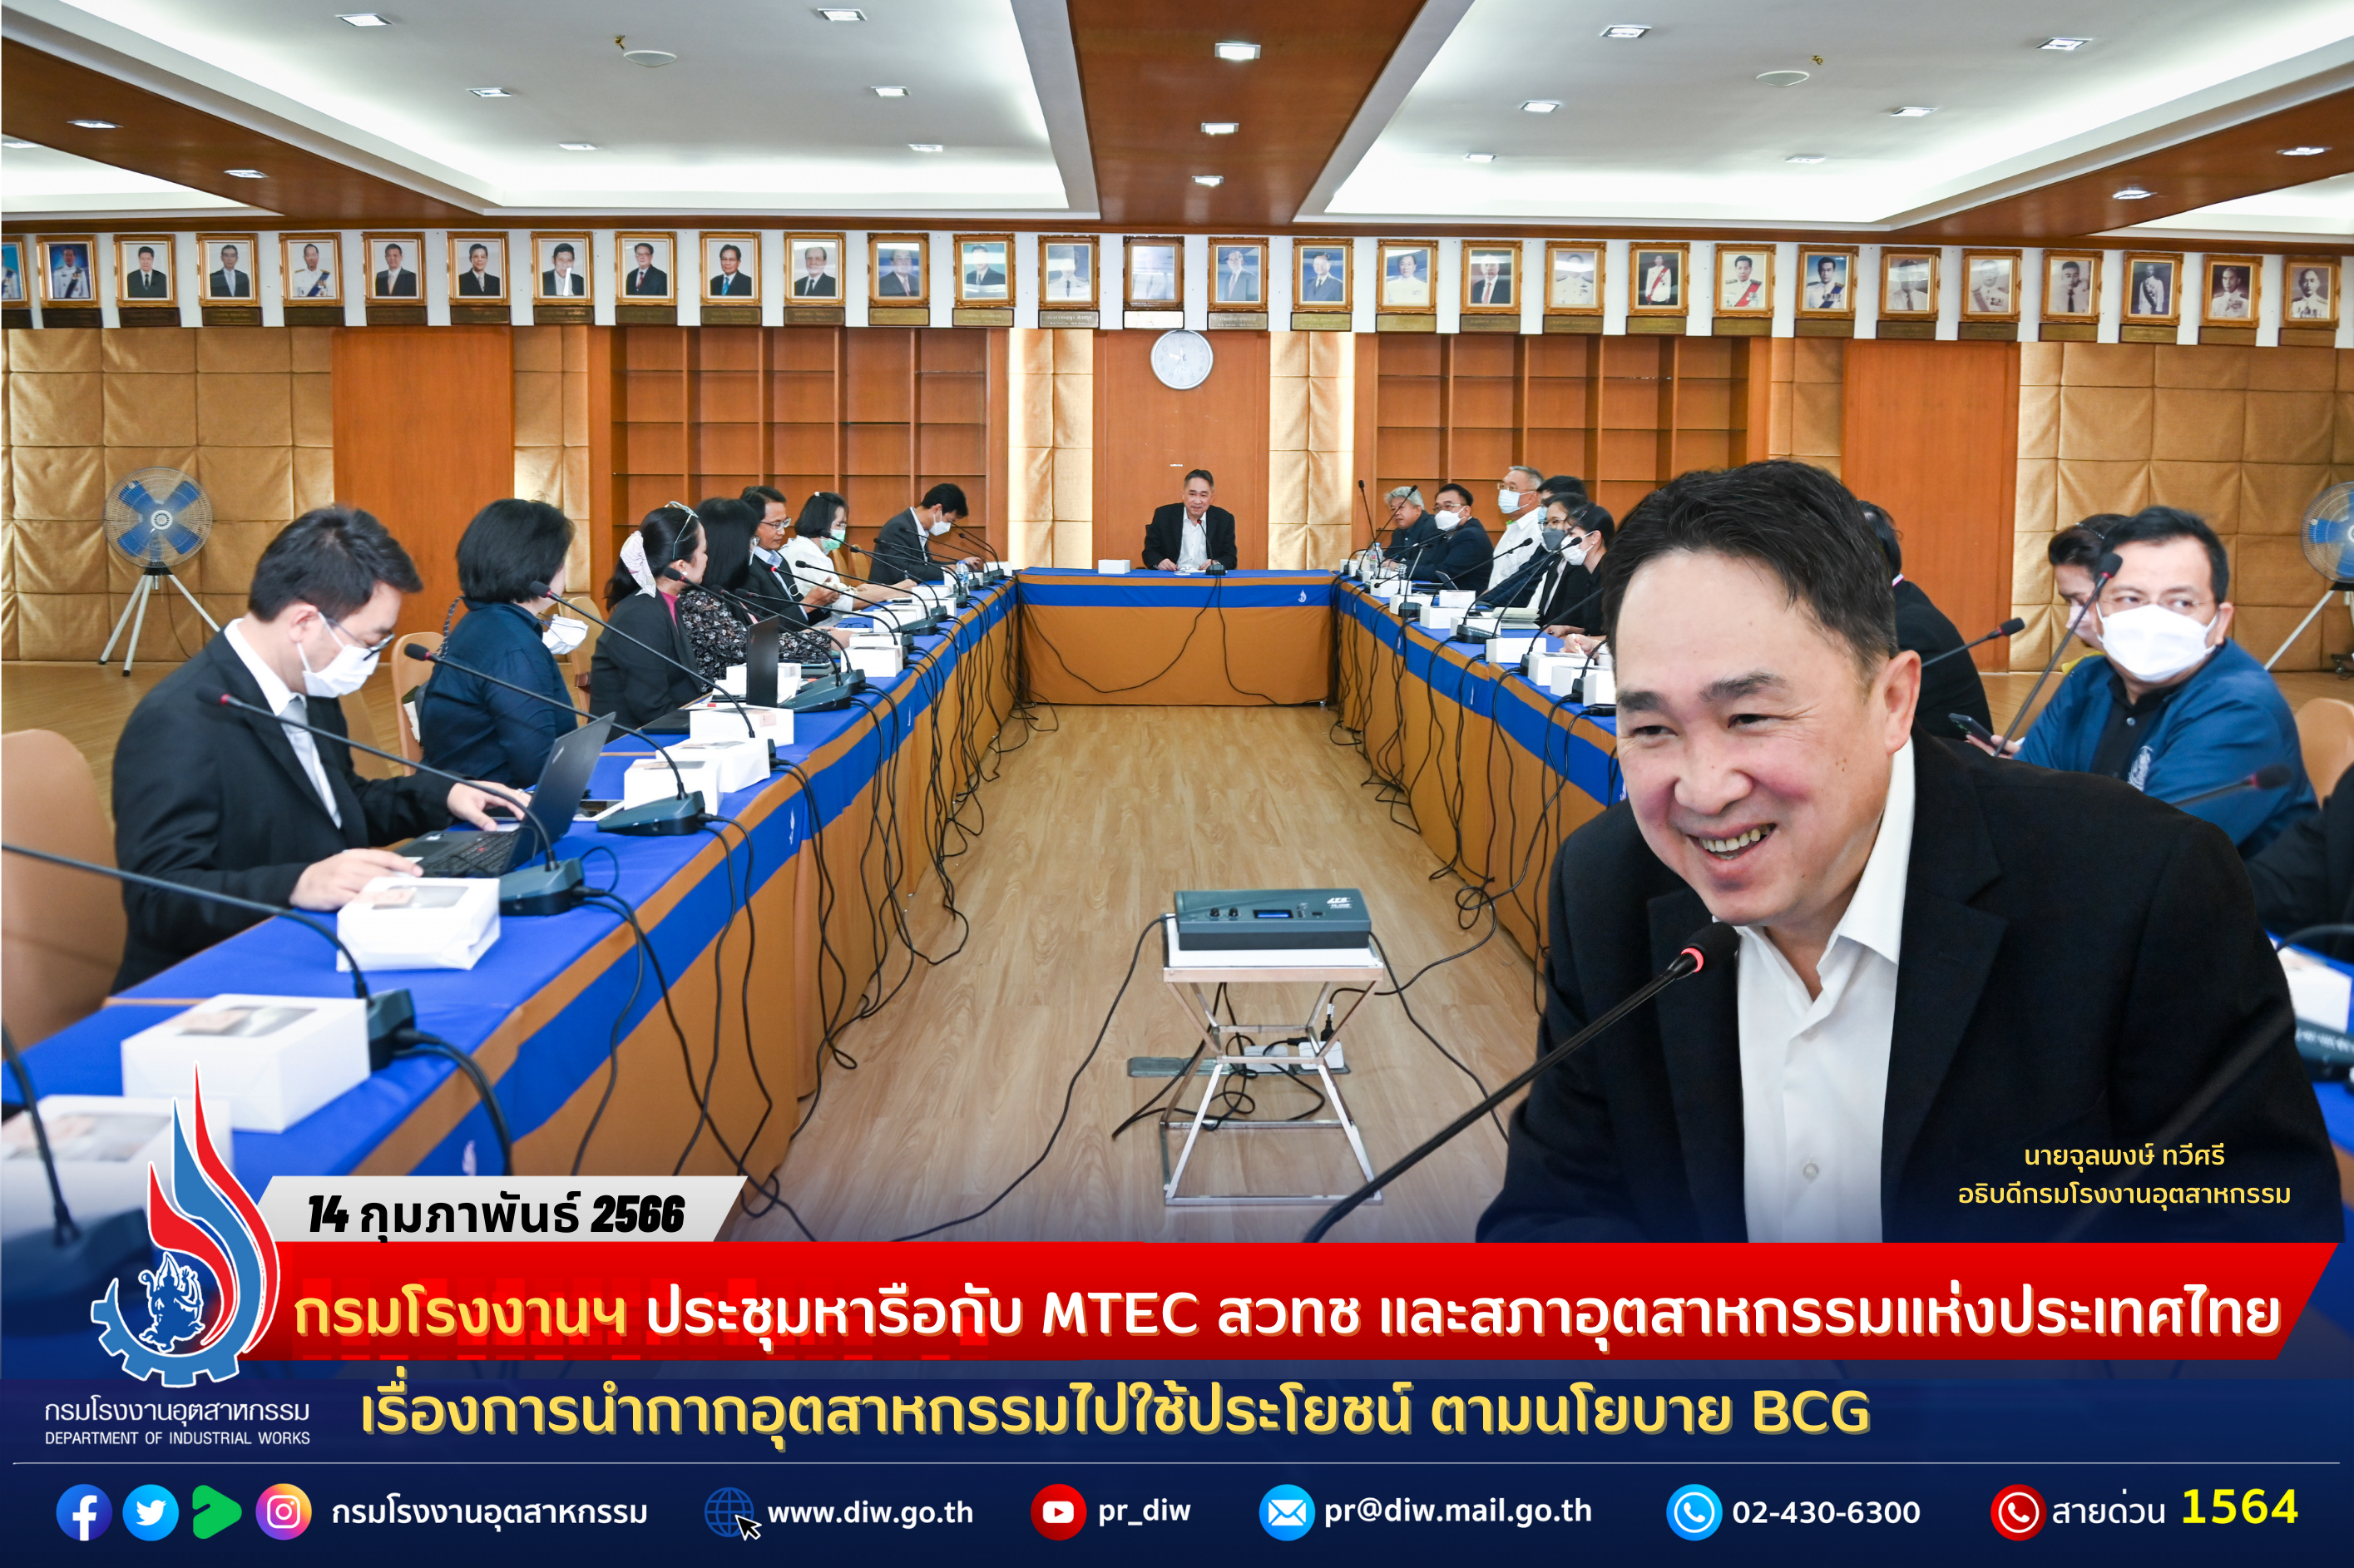 You are currently viewing กรมโรงงานฯ ประชุมหารือกับ MTEC สวทช และสภาอุตสาหกรรมแห่งประเทศไทย เรื่องการนำกากอุตสาหกรรมไปใช้ประโยชน์ ตามนโยบาย BCG